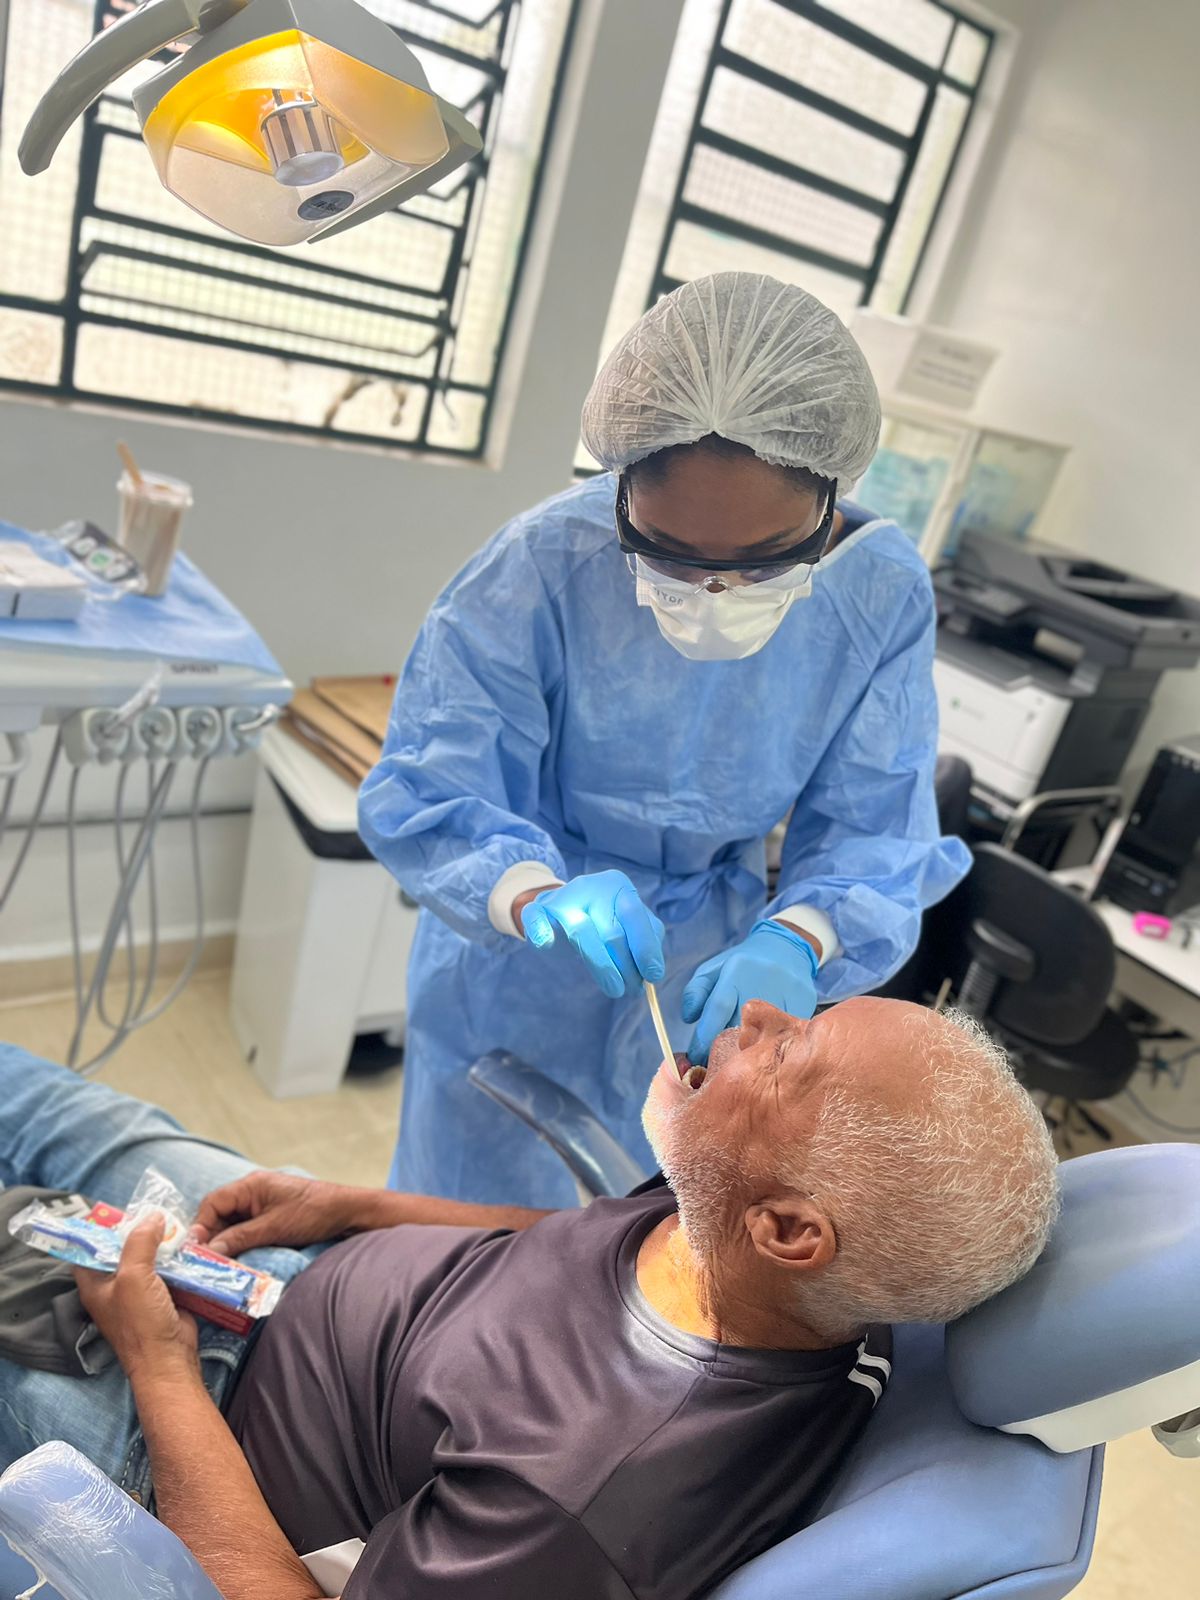 A foto mostra uma dentista durante um exame em paciente. Ela usa avental azul, touca, máscara e luvas, e usa uma espátula para examinar a boca do paciente, um homem idoso